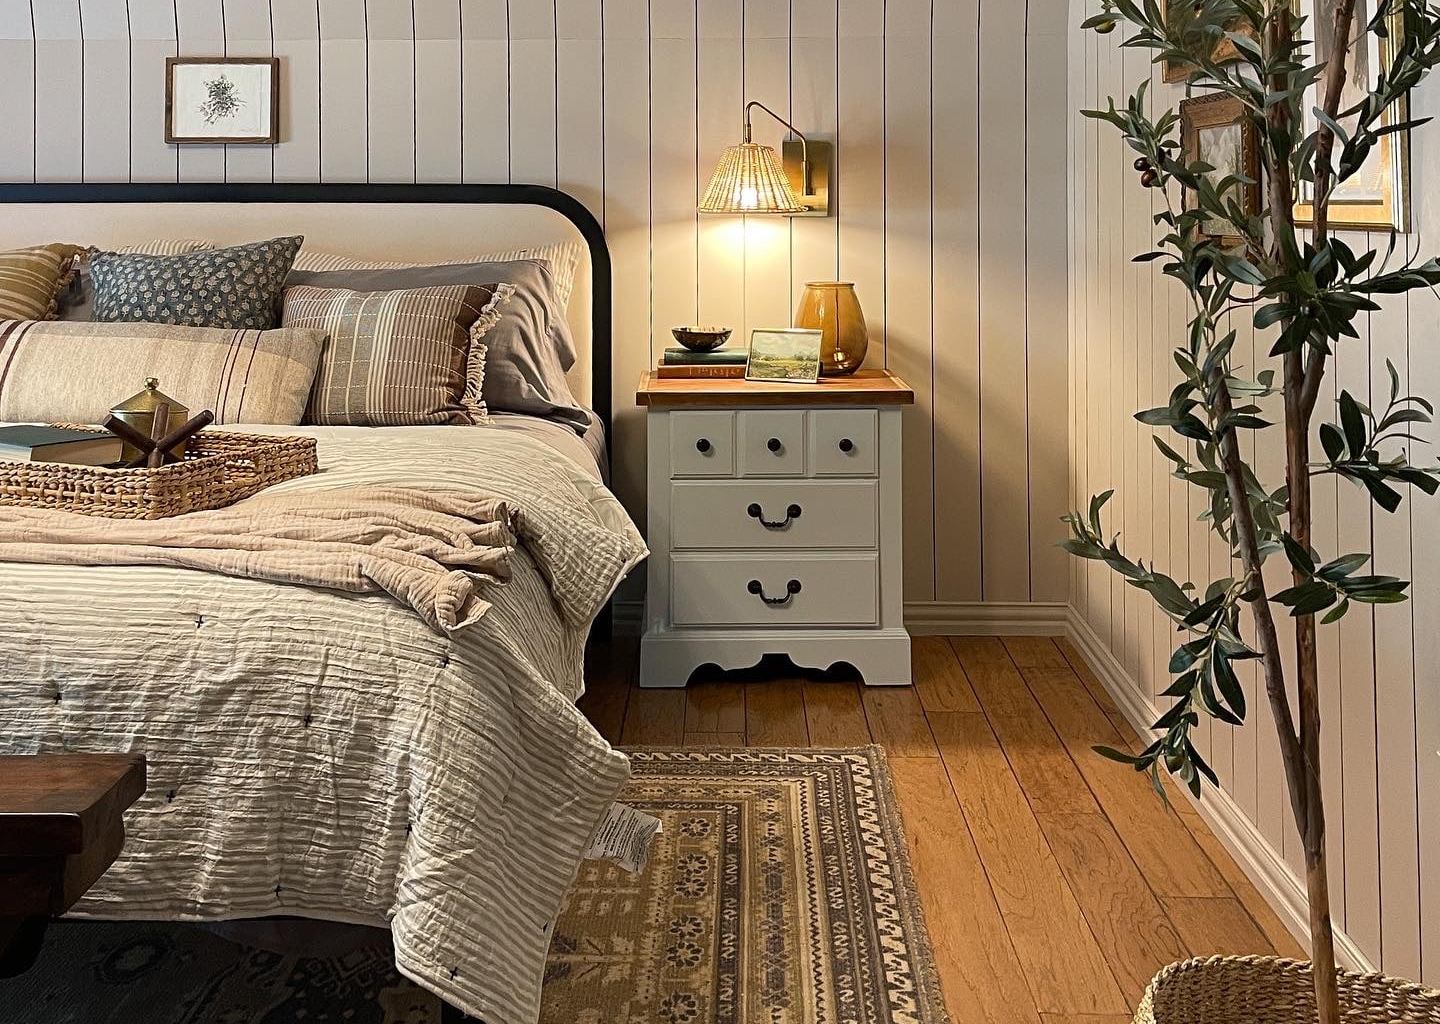 Modern Cottage Shared Teen Girl Bedroom Reveal - Bless'er House